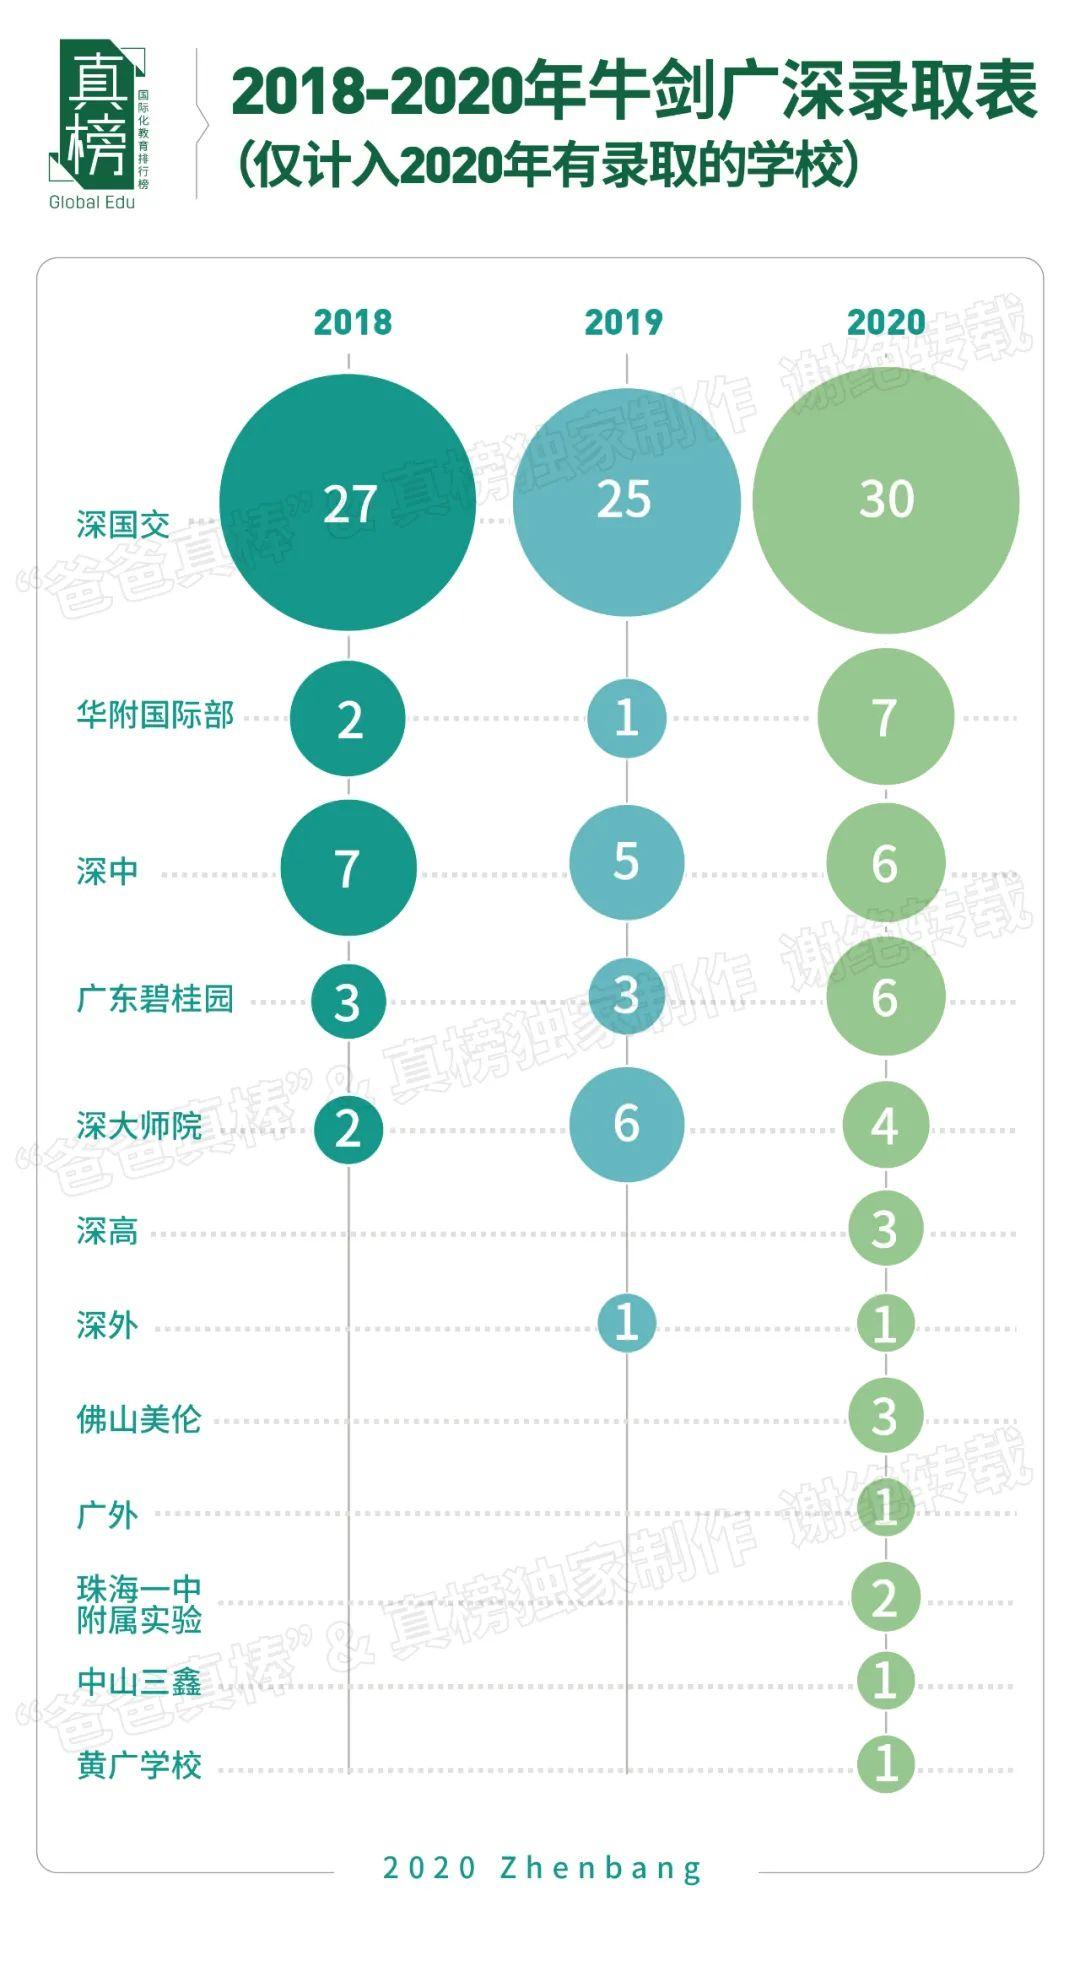 真榜*发榜: 2020年广深顶尖大学录取第一名校是这所学校  数据 深圳国际交流学院 第16张